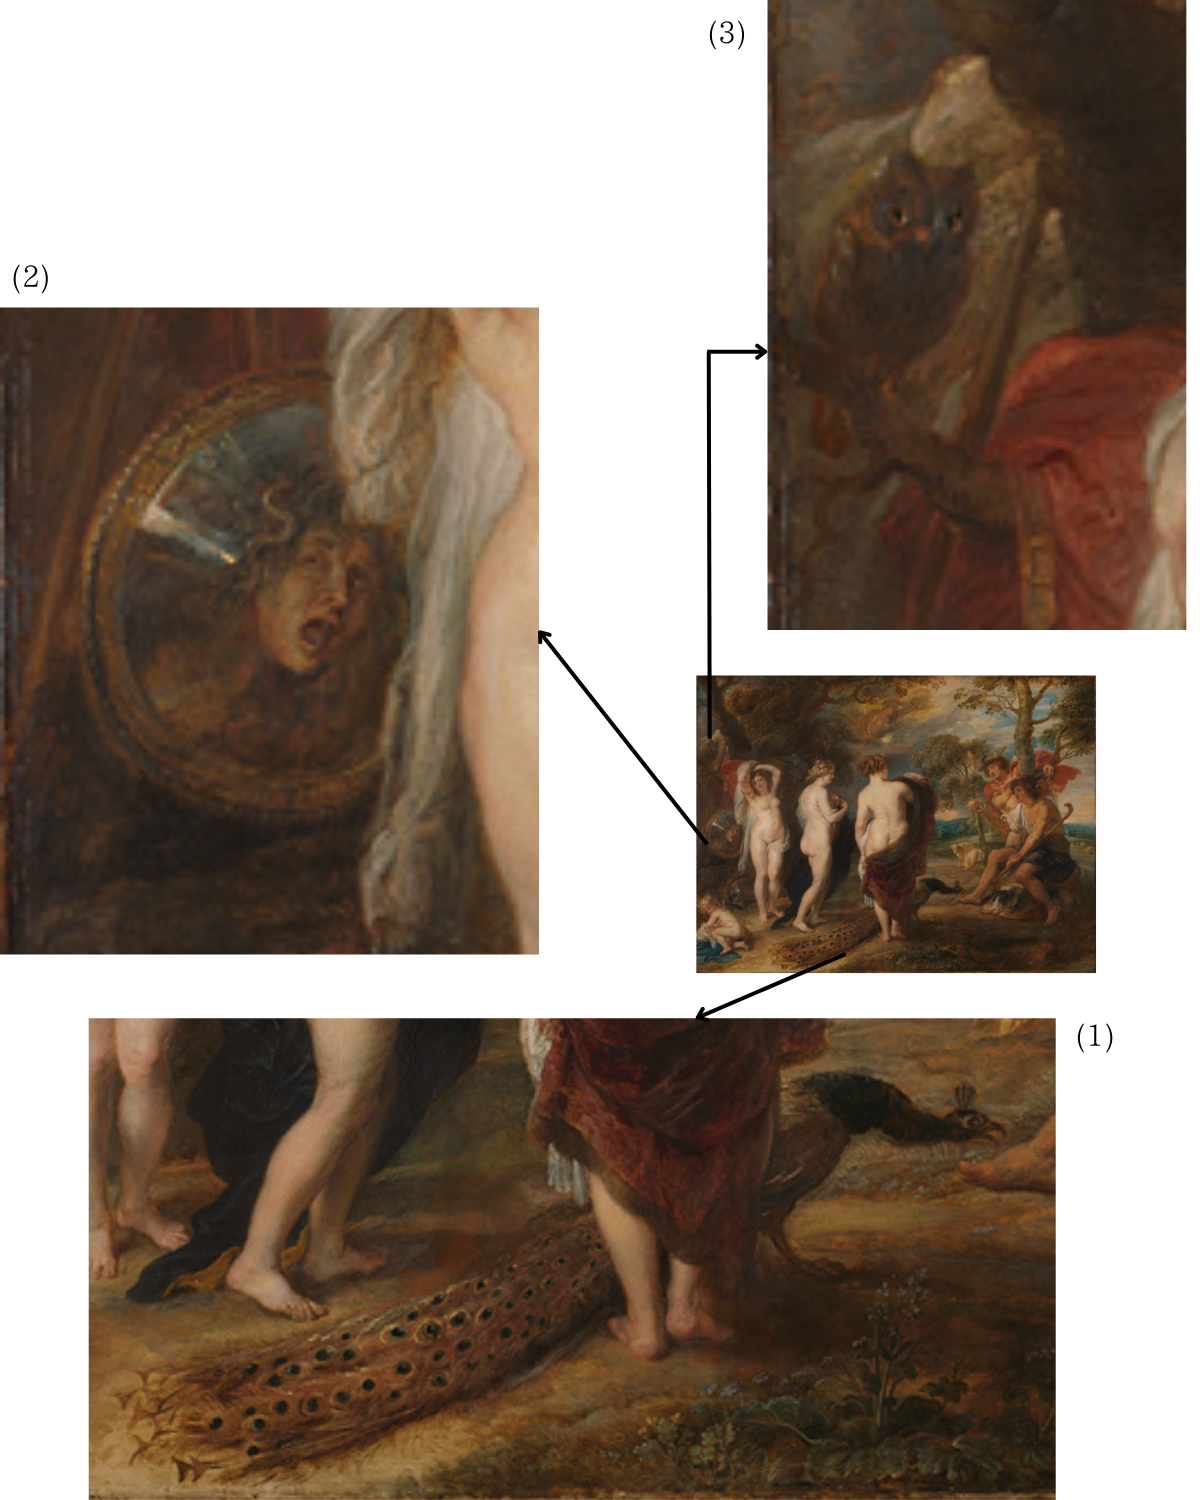 〈パリスの審判〉（1）女神の足元にいる孔雀（2）メドゥーサの頭部のついた盾（3）枝で羽を休める梟